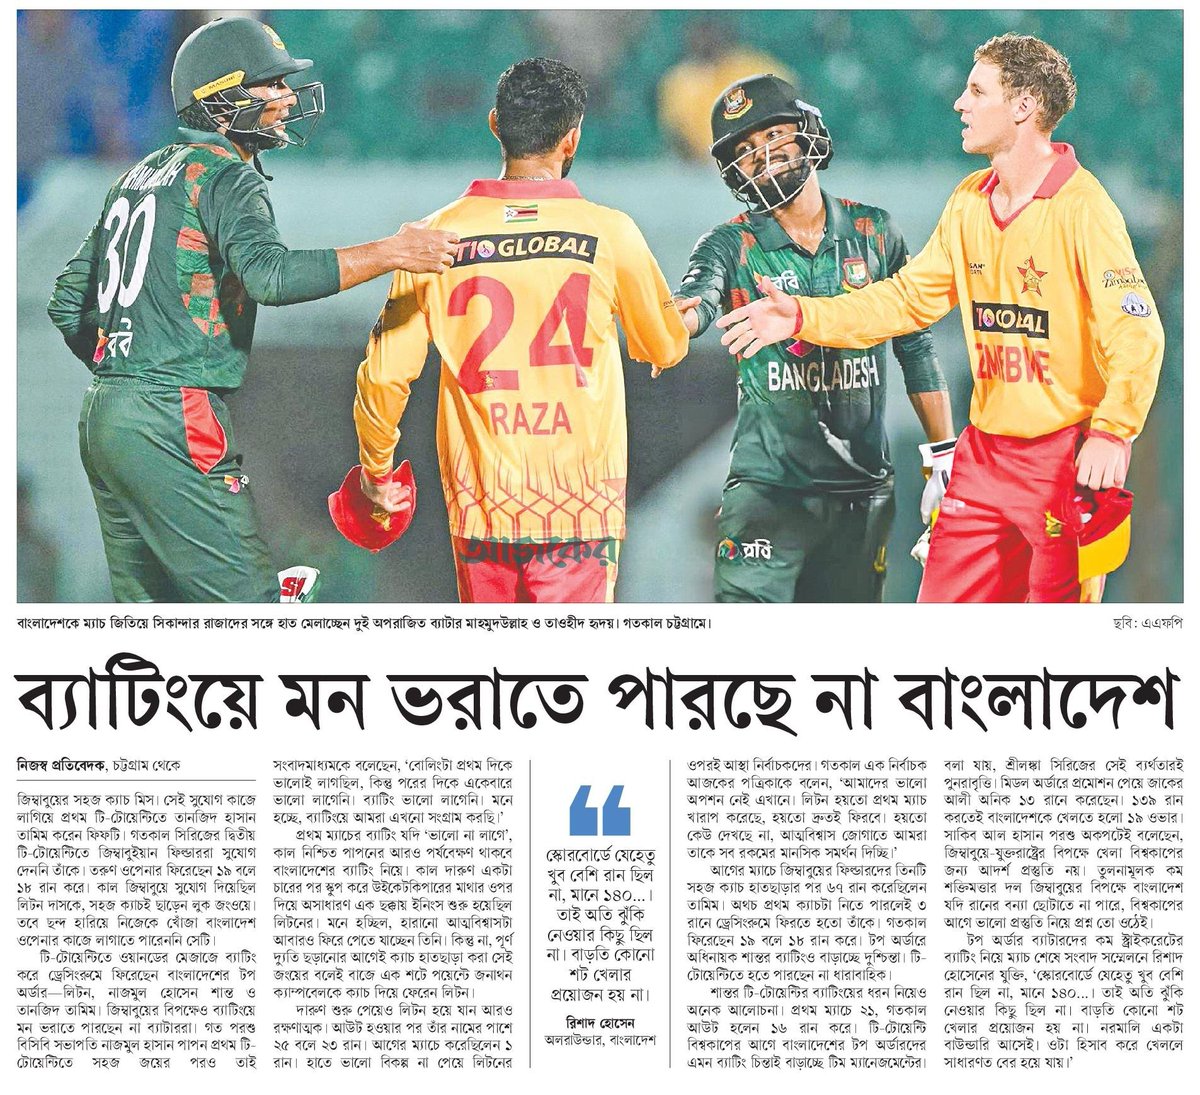 ব্যাটিংয়ে মন ভরাতে পারছে না বাংলাদেশ... #SportsNews #Bangladesh #Newspaper #BangladeshCricket #BDCricket @BCBtigers